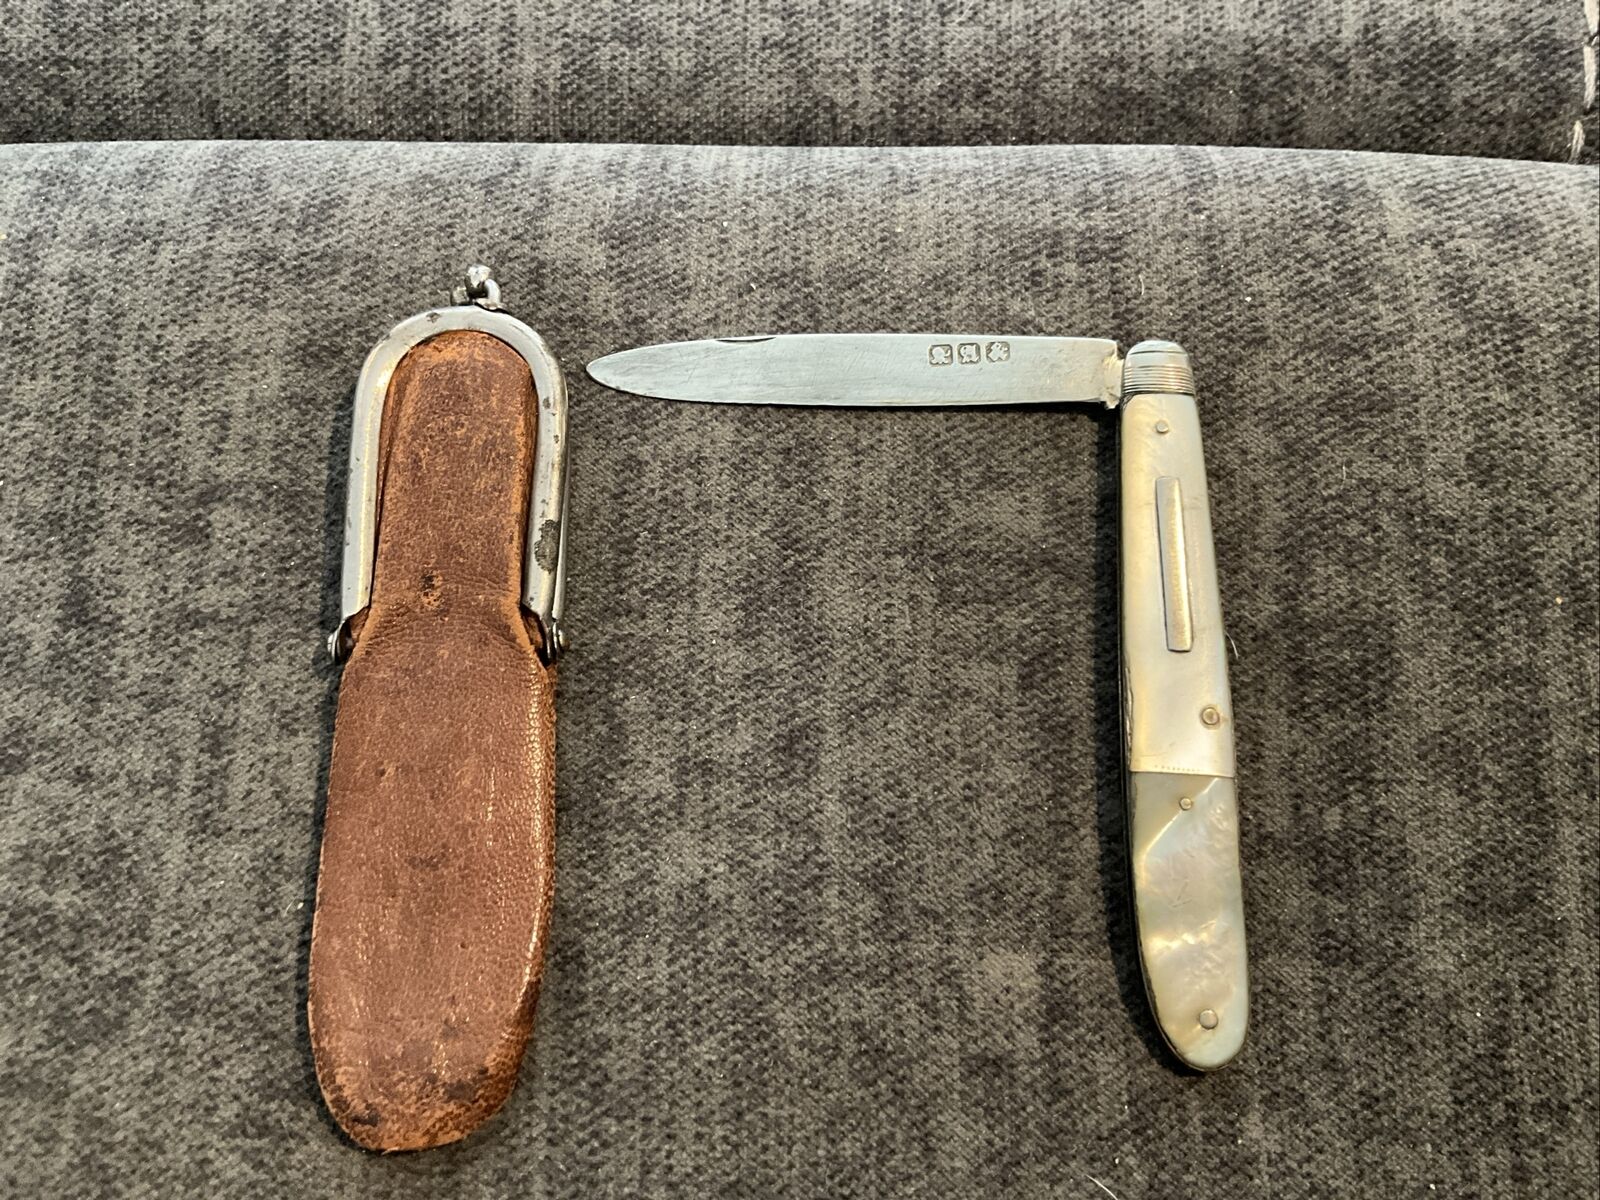 Antique Pocket Knife